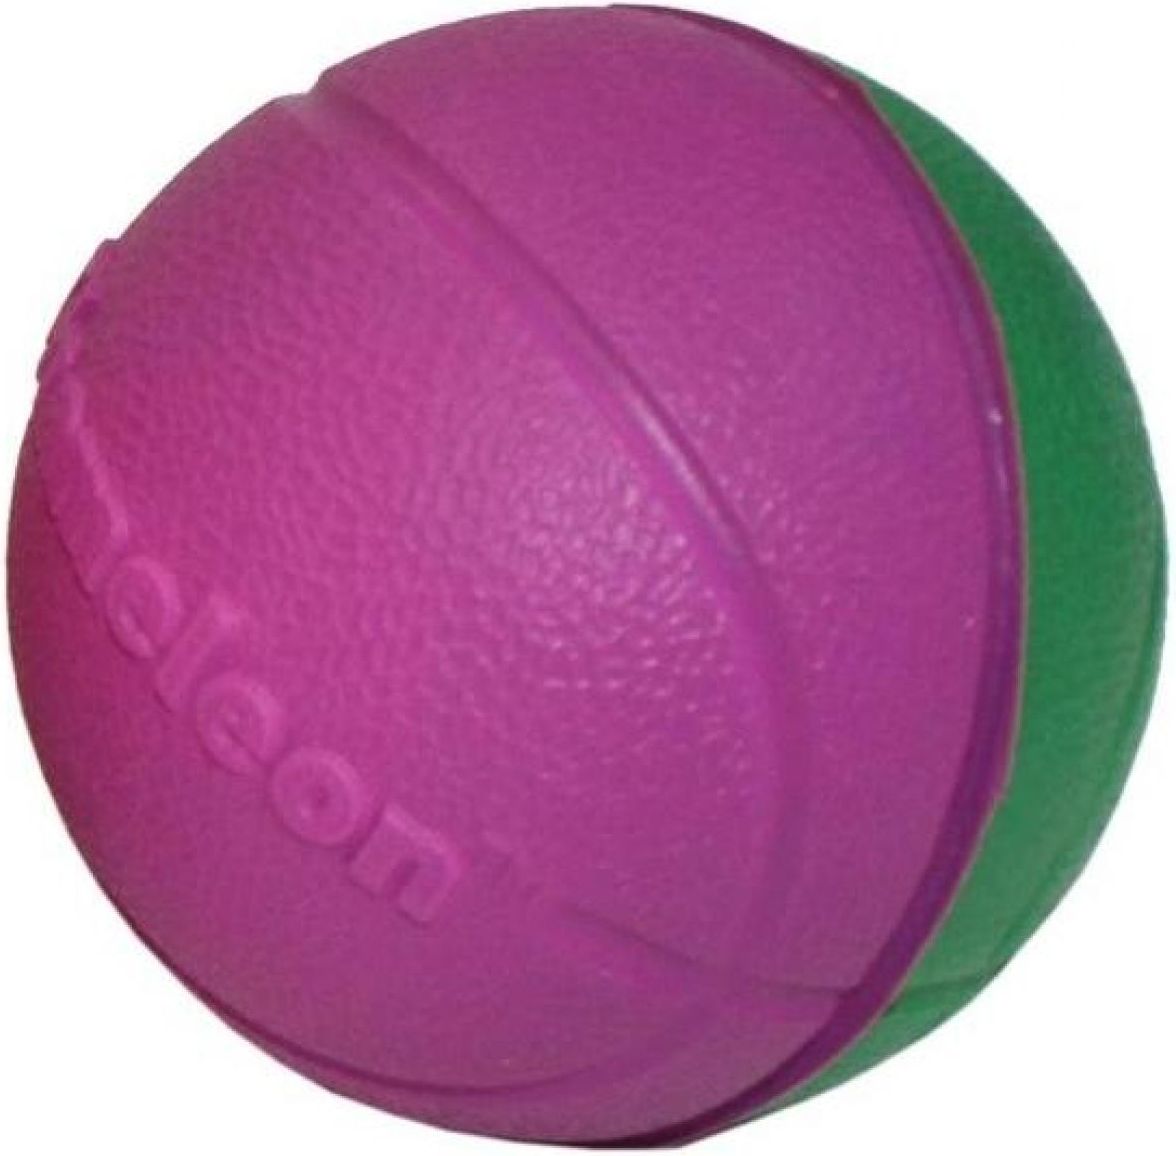 EP Line Chameleon basketbalový míč 6,5cm - Fialová zelená - obrázek 1